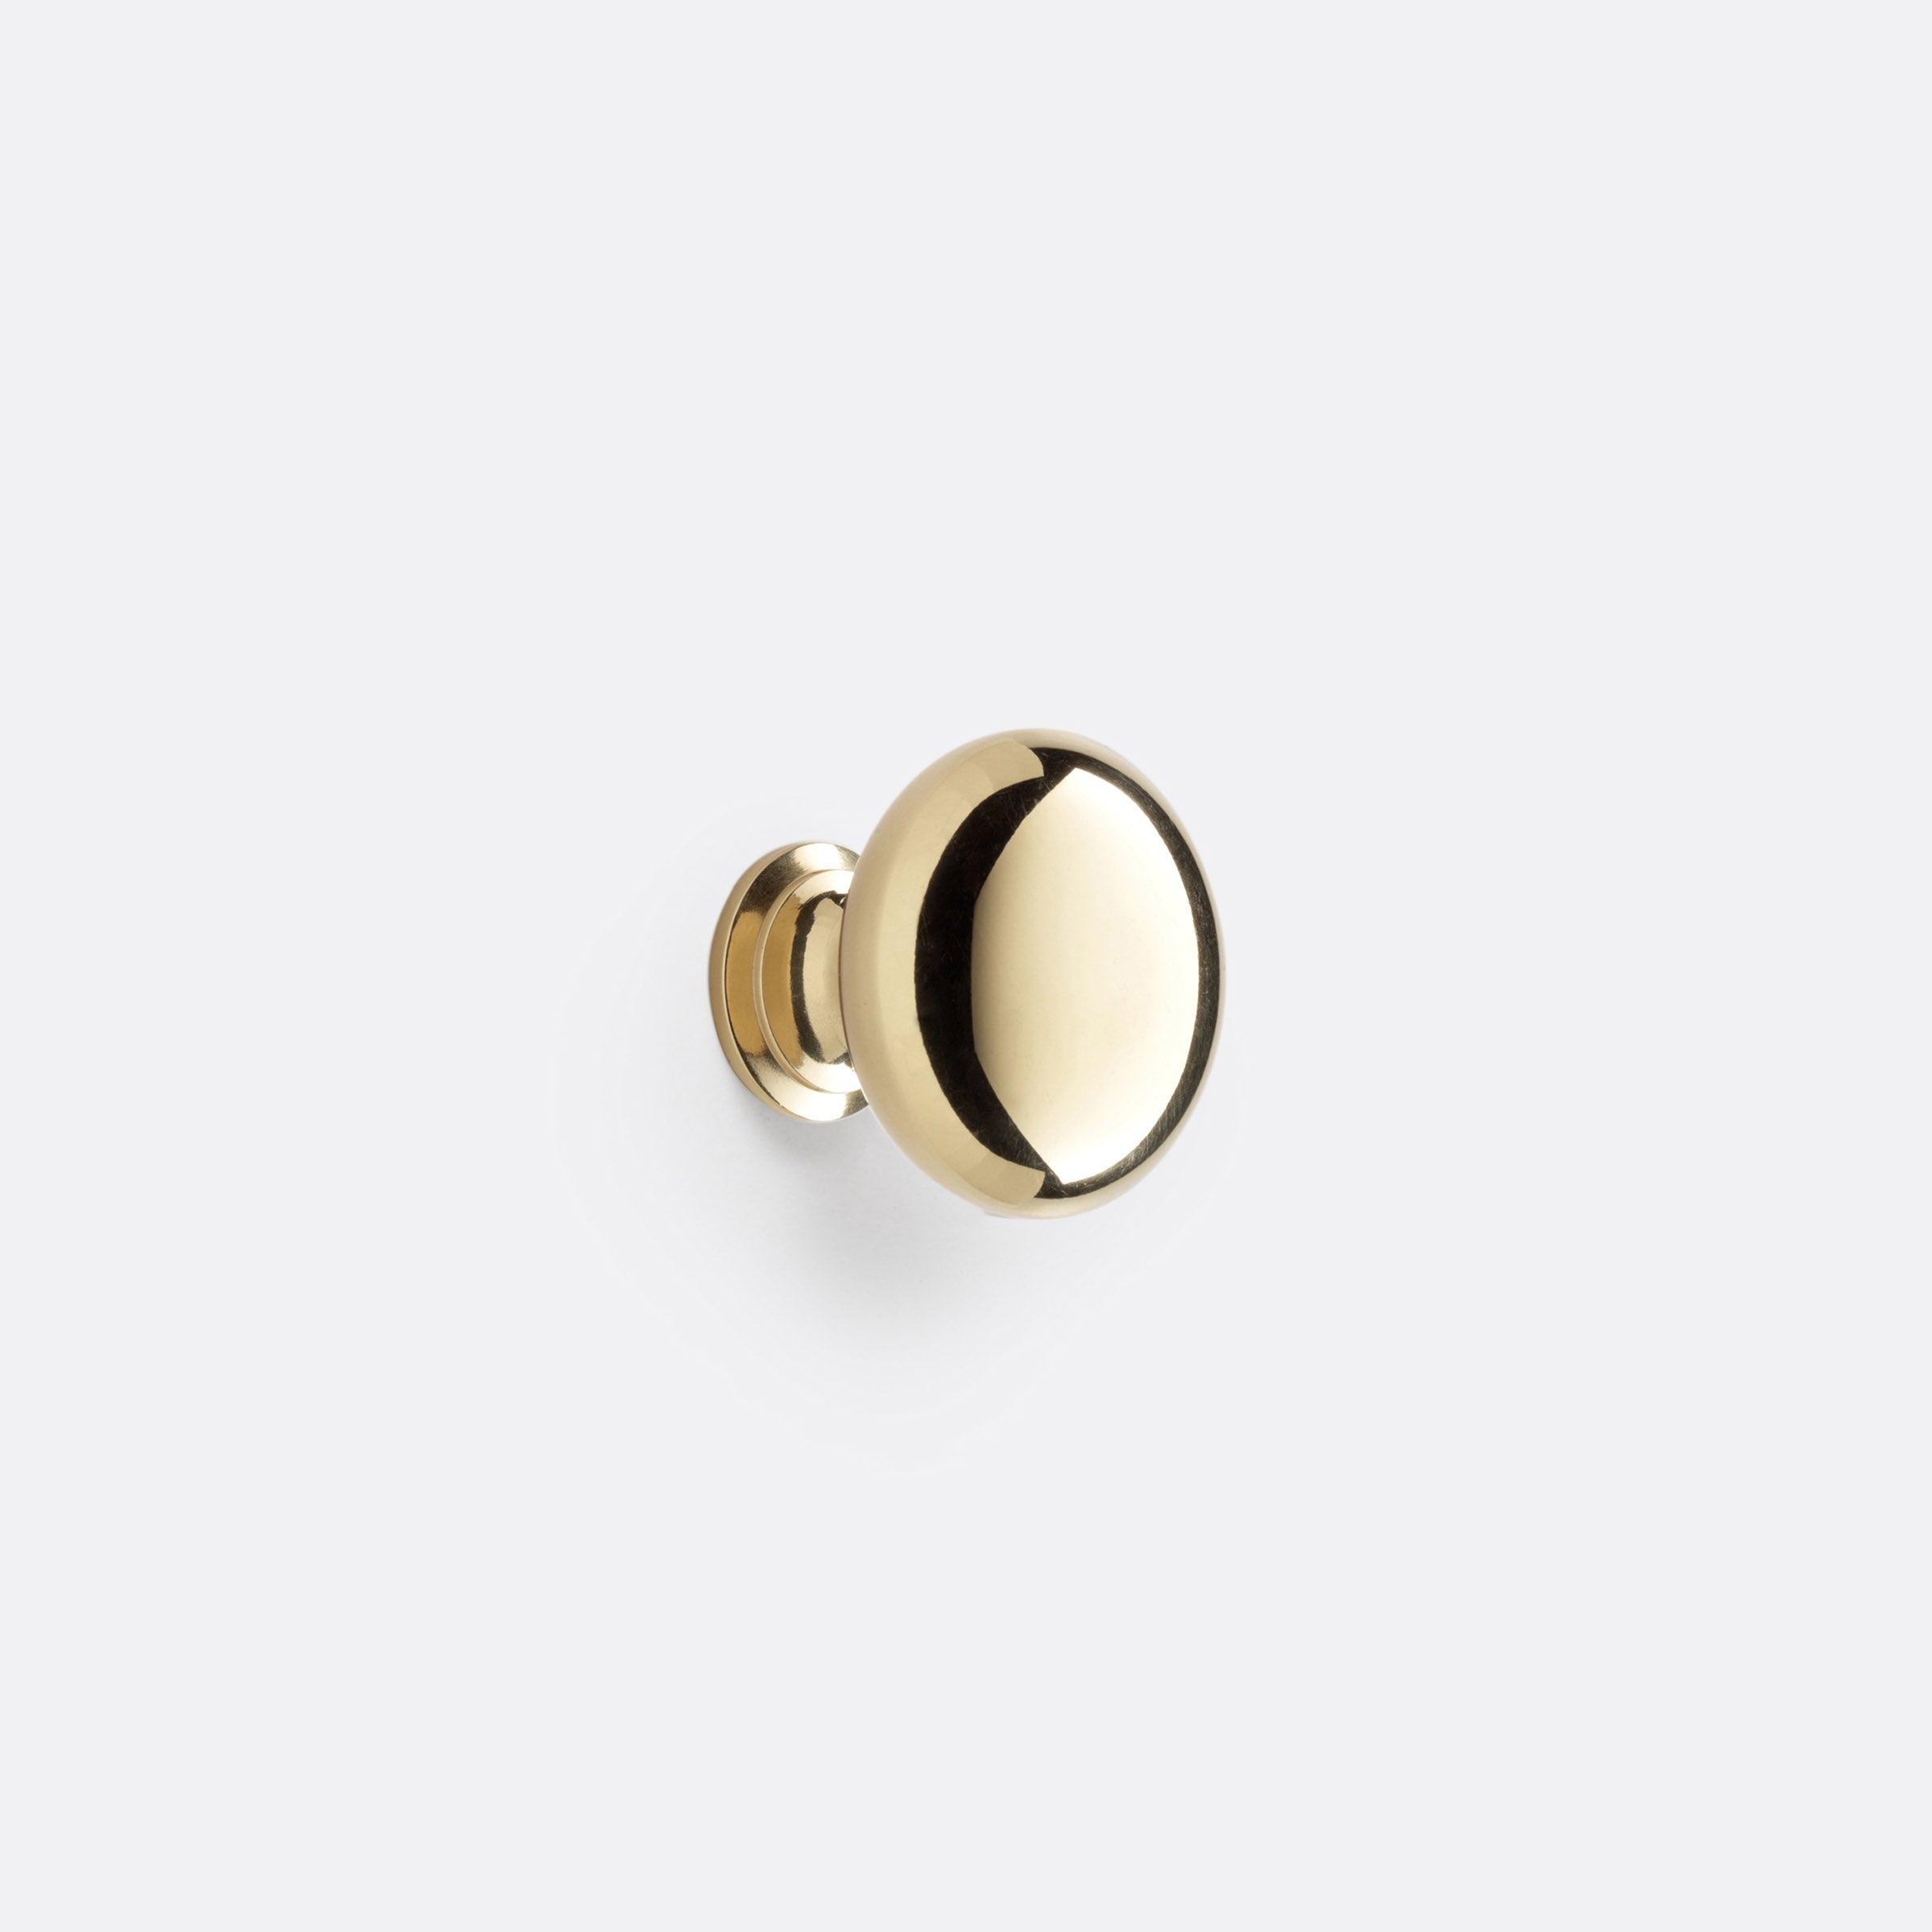 Massey Round Cabinet Knob by Rejuvenation Unlacquered Brass